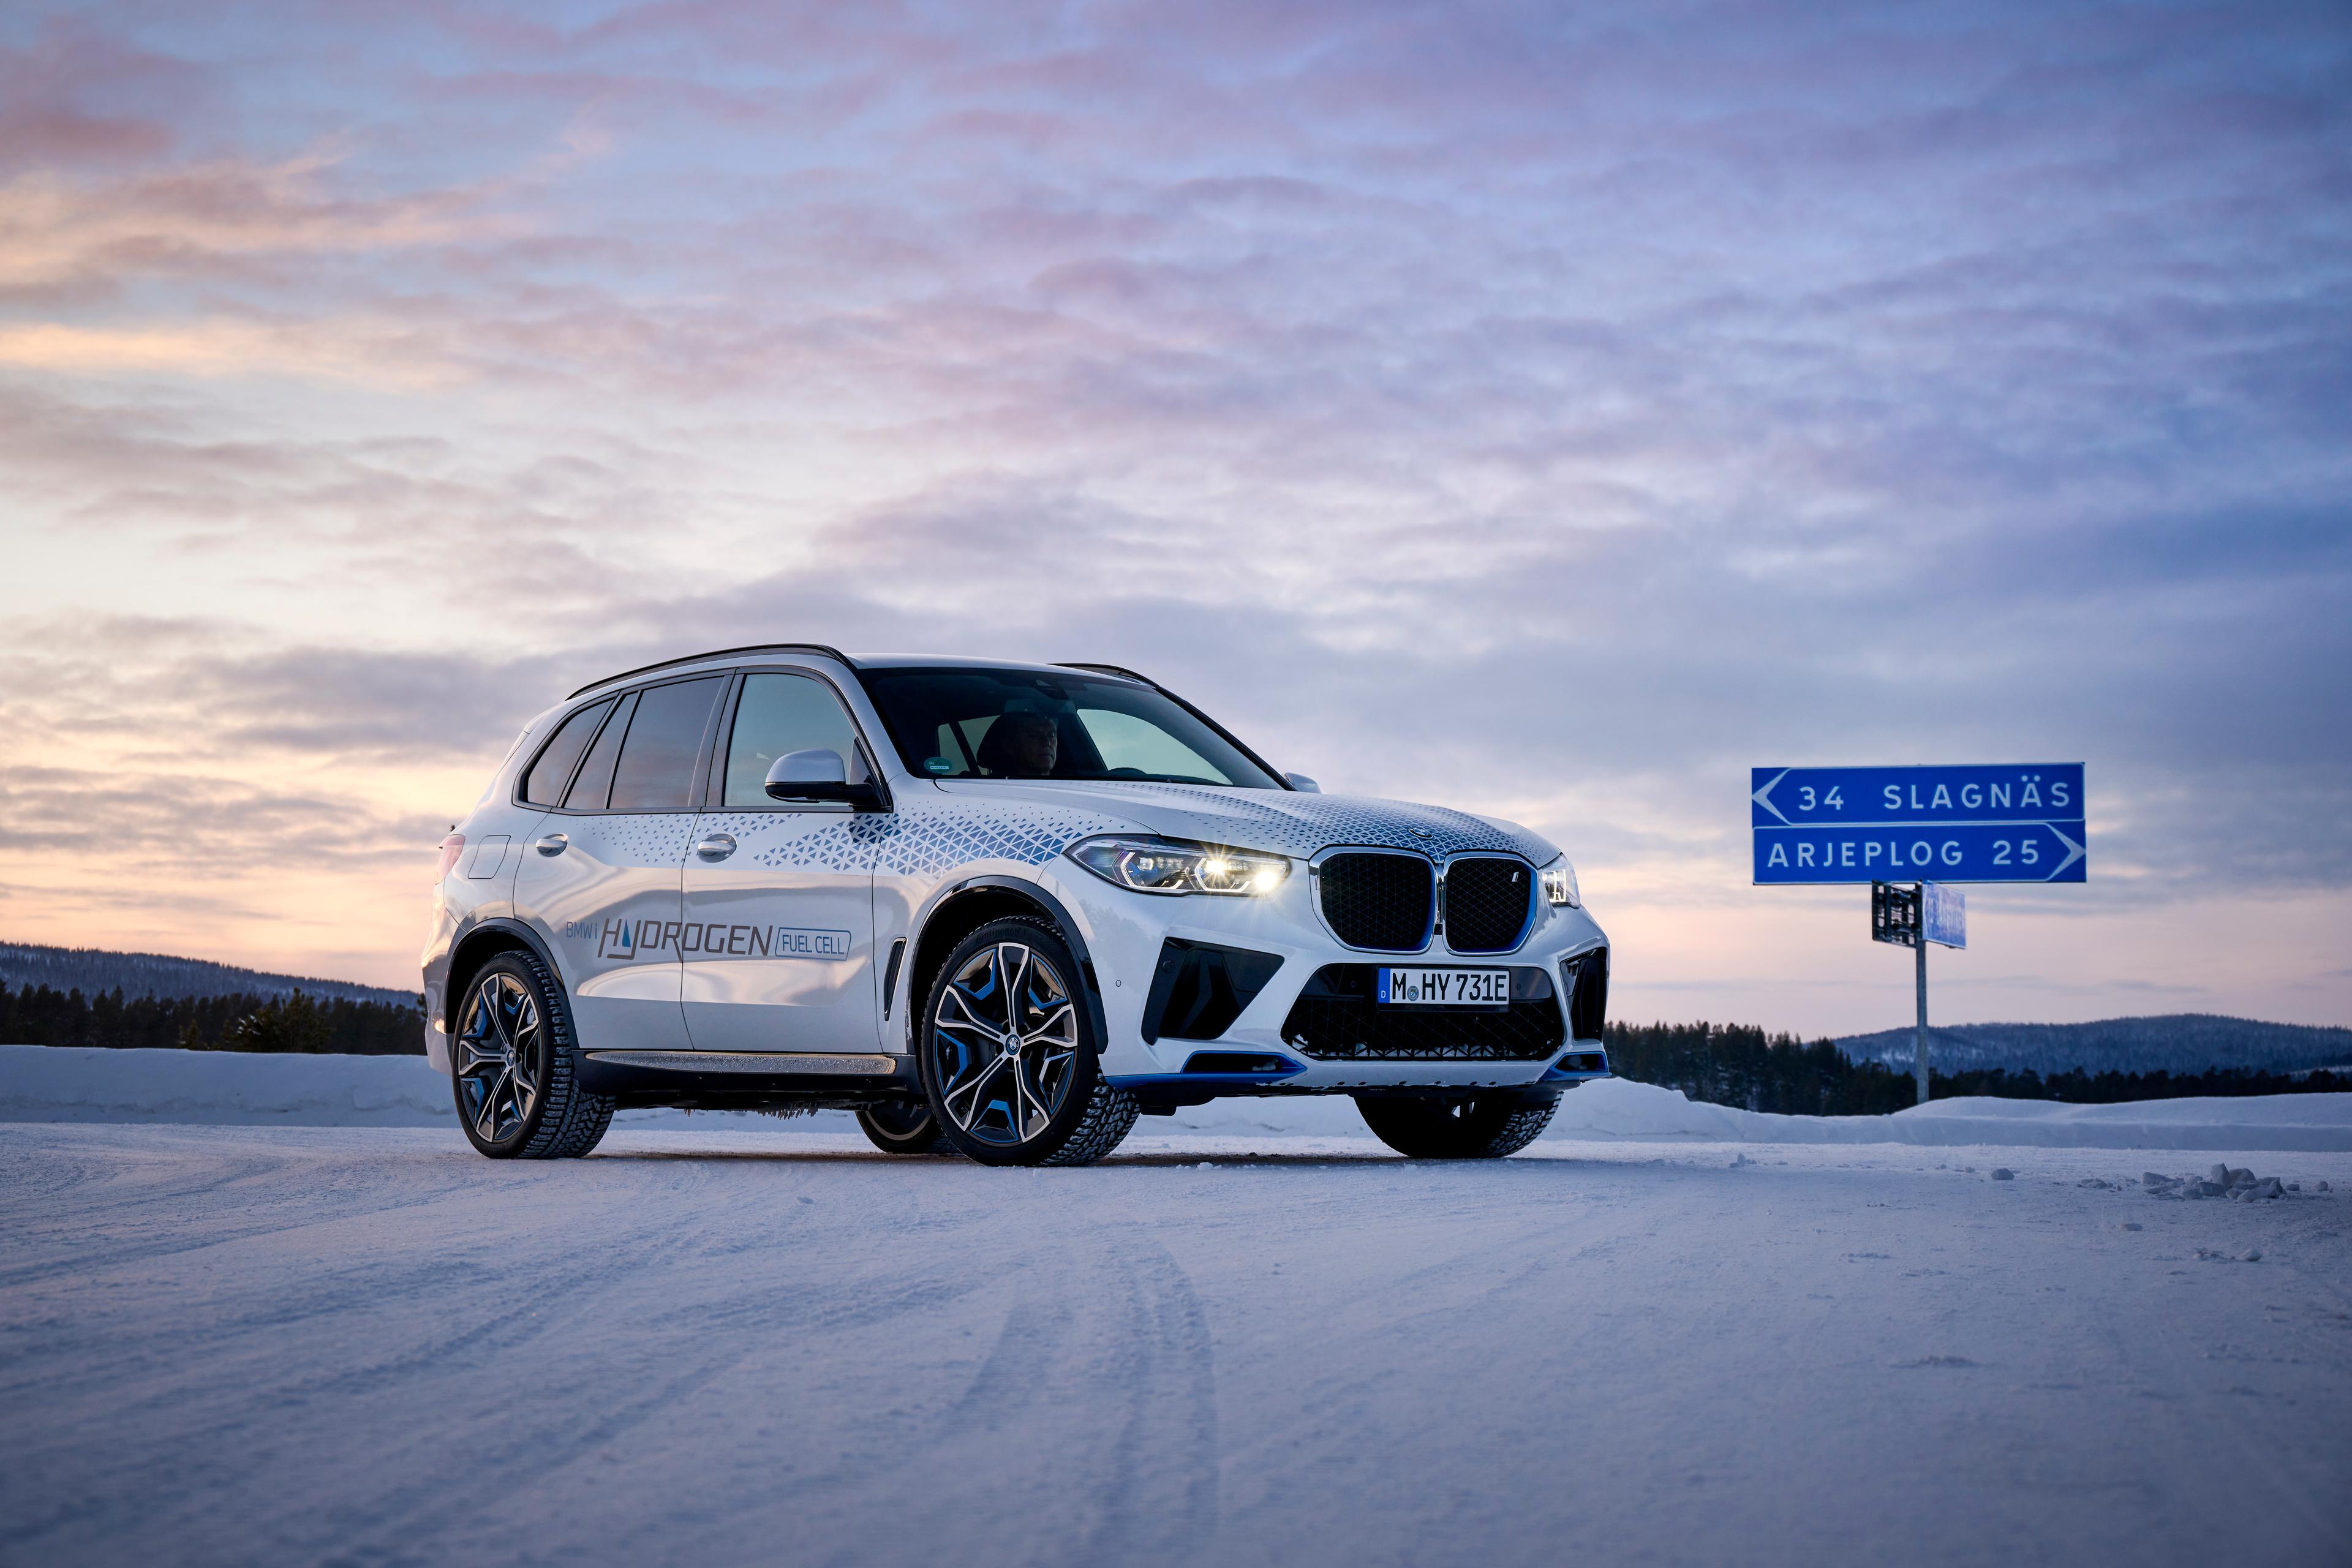 BMW tests hydrogen car